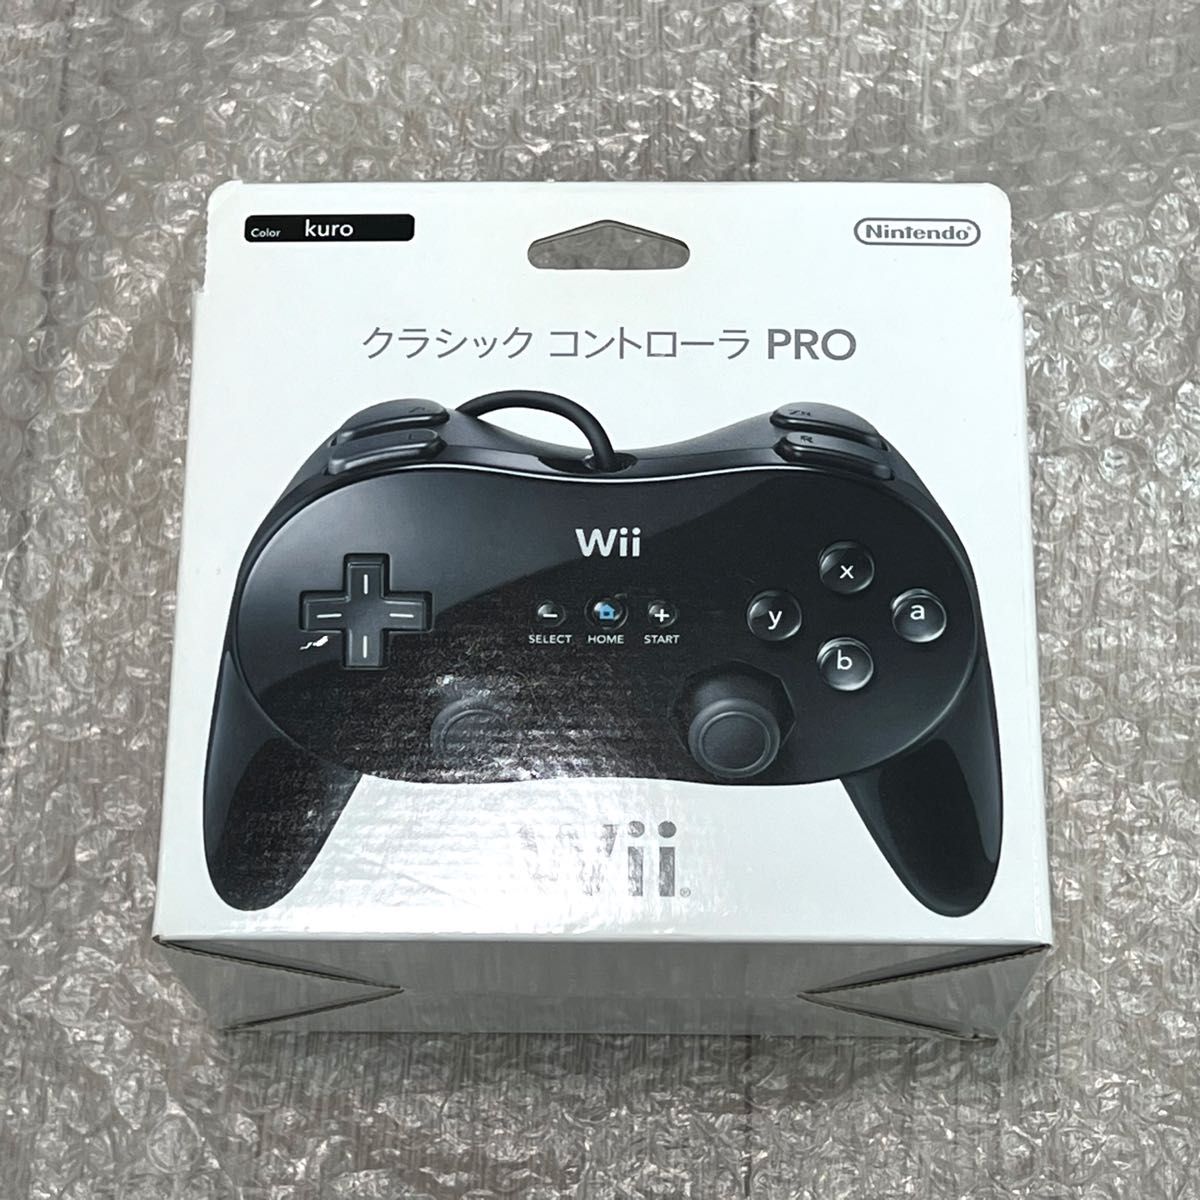 〈ほぼ未使用・極美品〉Wii クラシックコントローラーPRO kuro（黒・クロ）プロ Nintendo 任天堂 WiiU